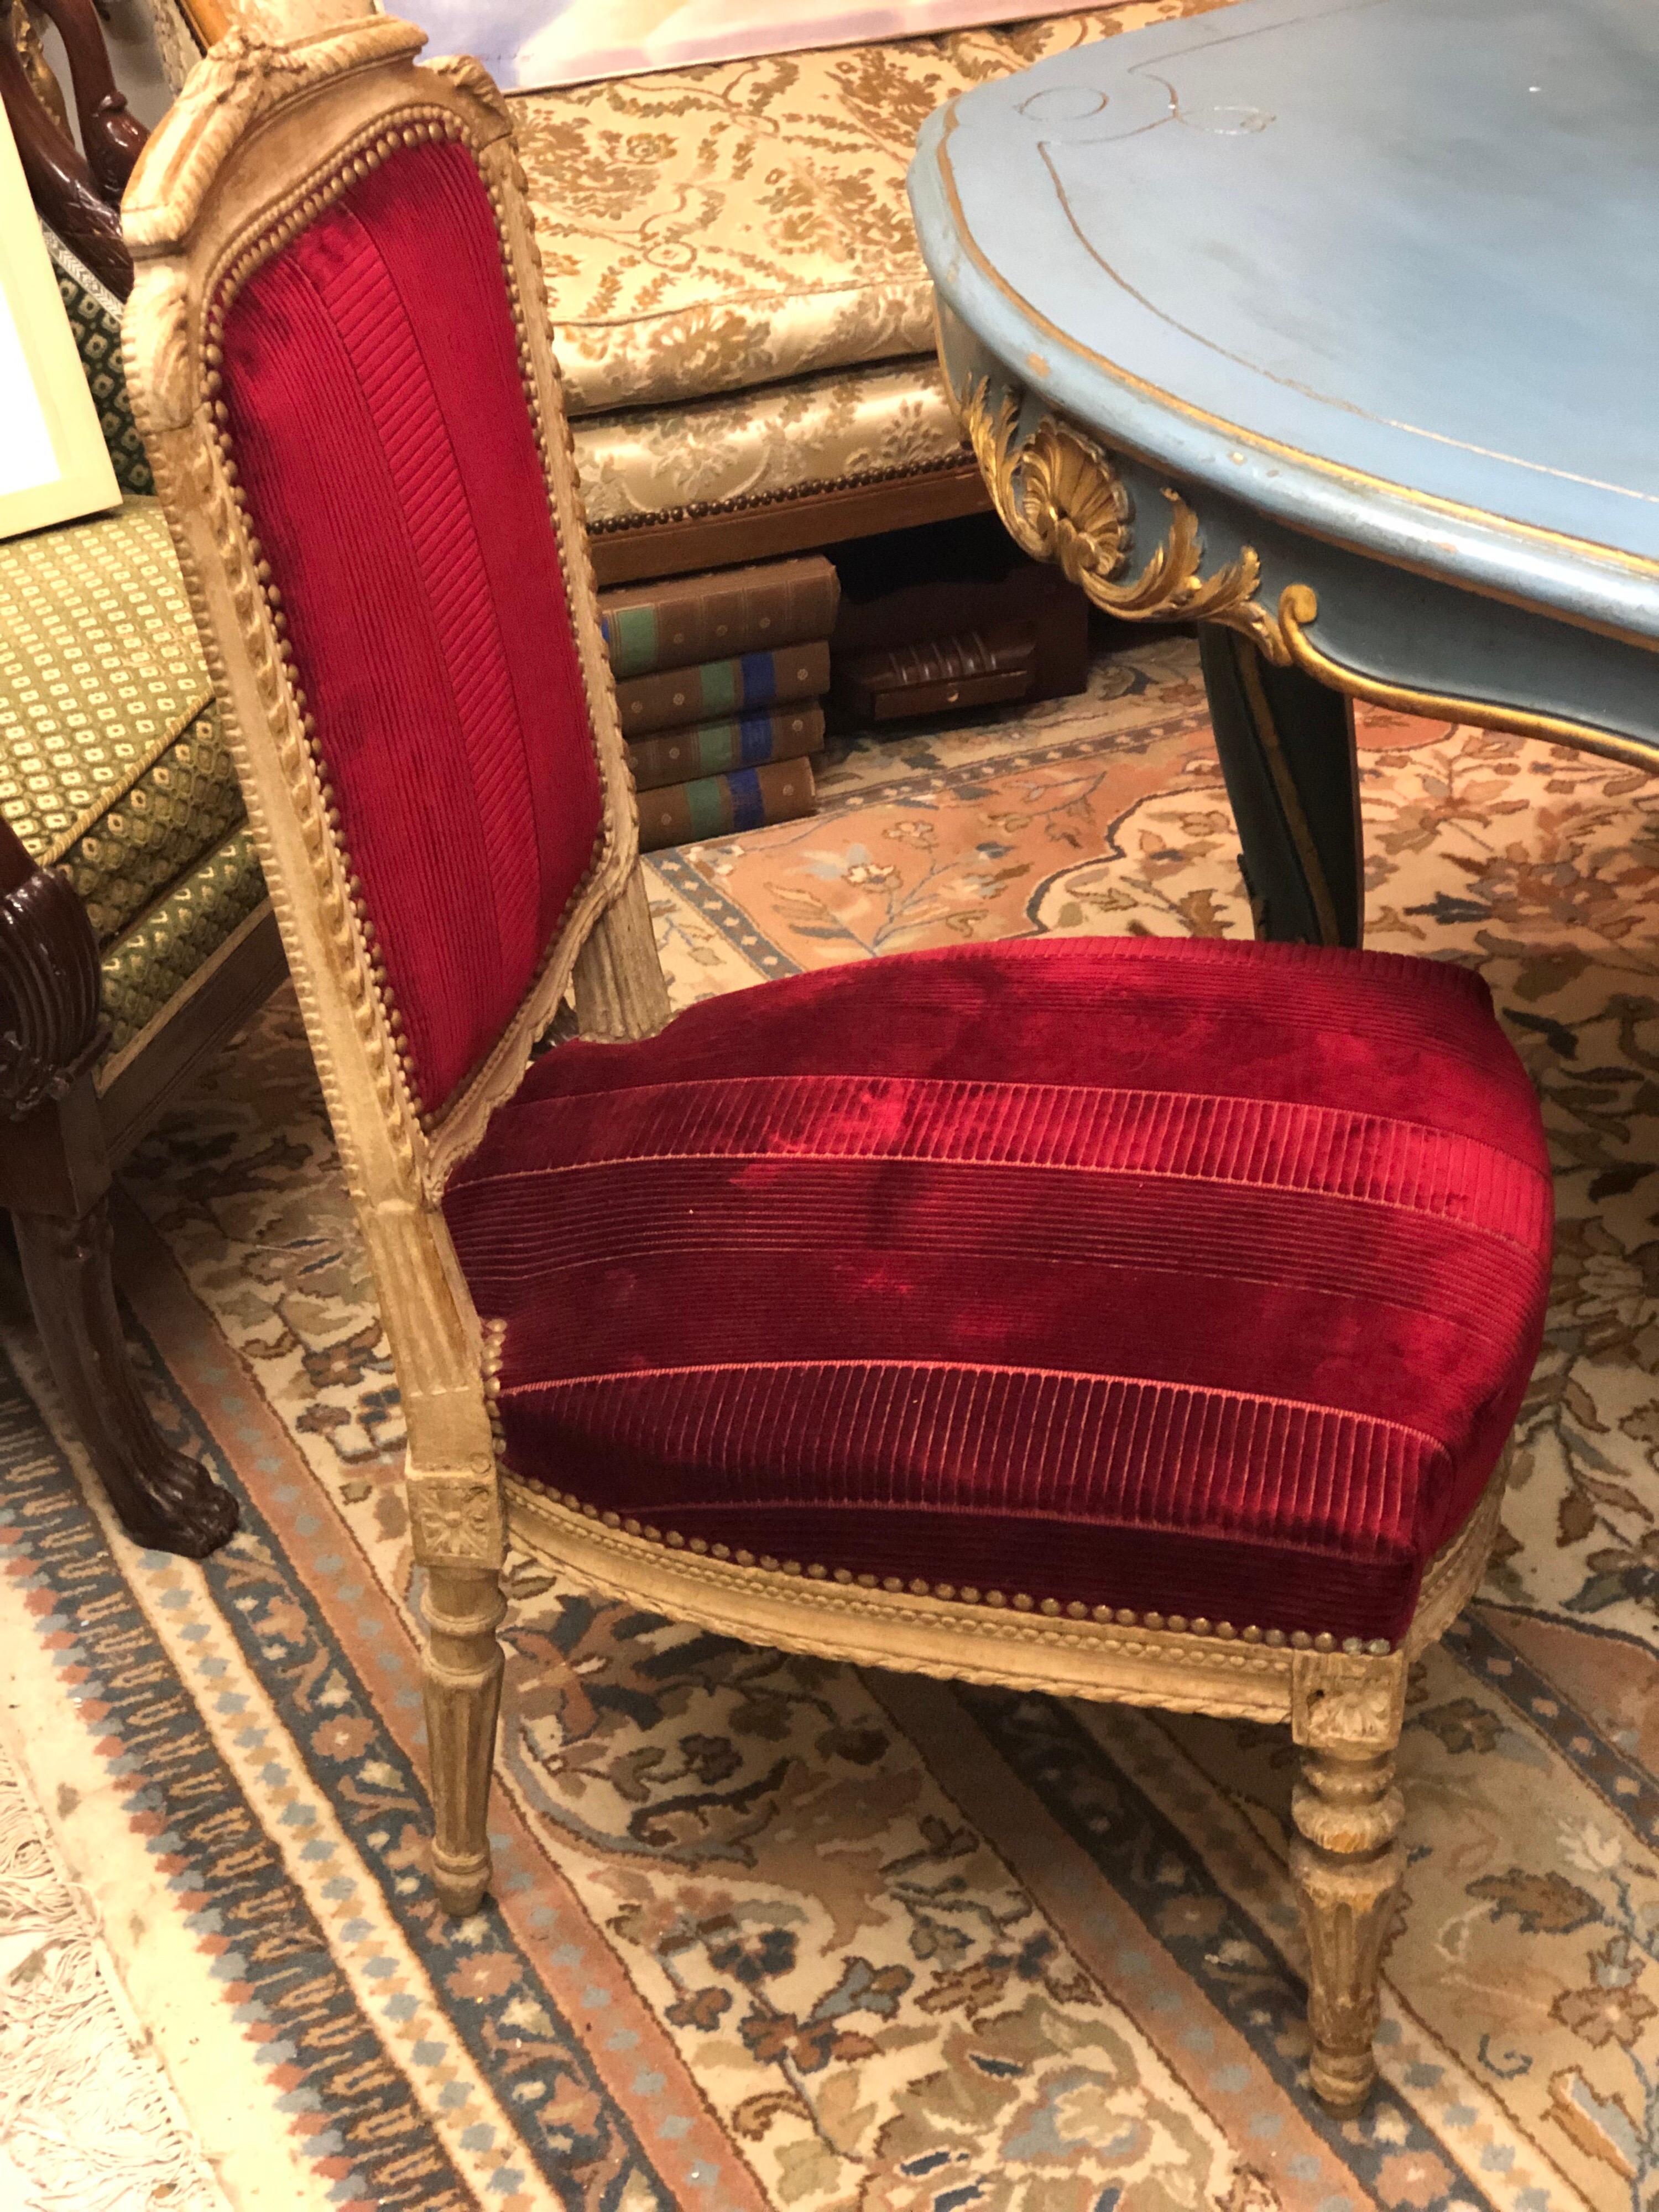 Chaise française à assise basse, sculptée à la main, peinte en beige clair, avec une décoration élégante dans une tapisserie rouge et en très bon état.
Fin du 19e siècle.
 